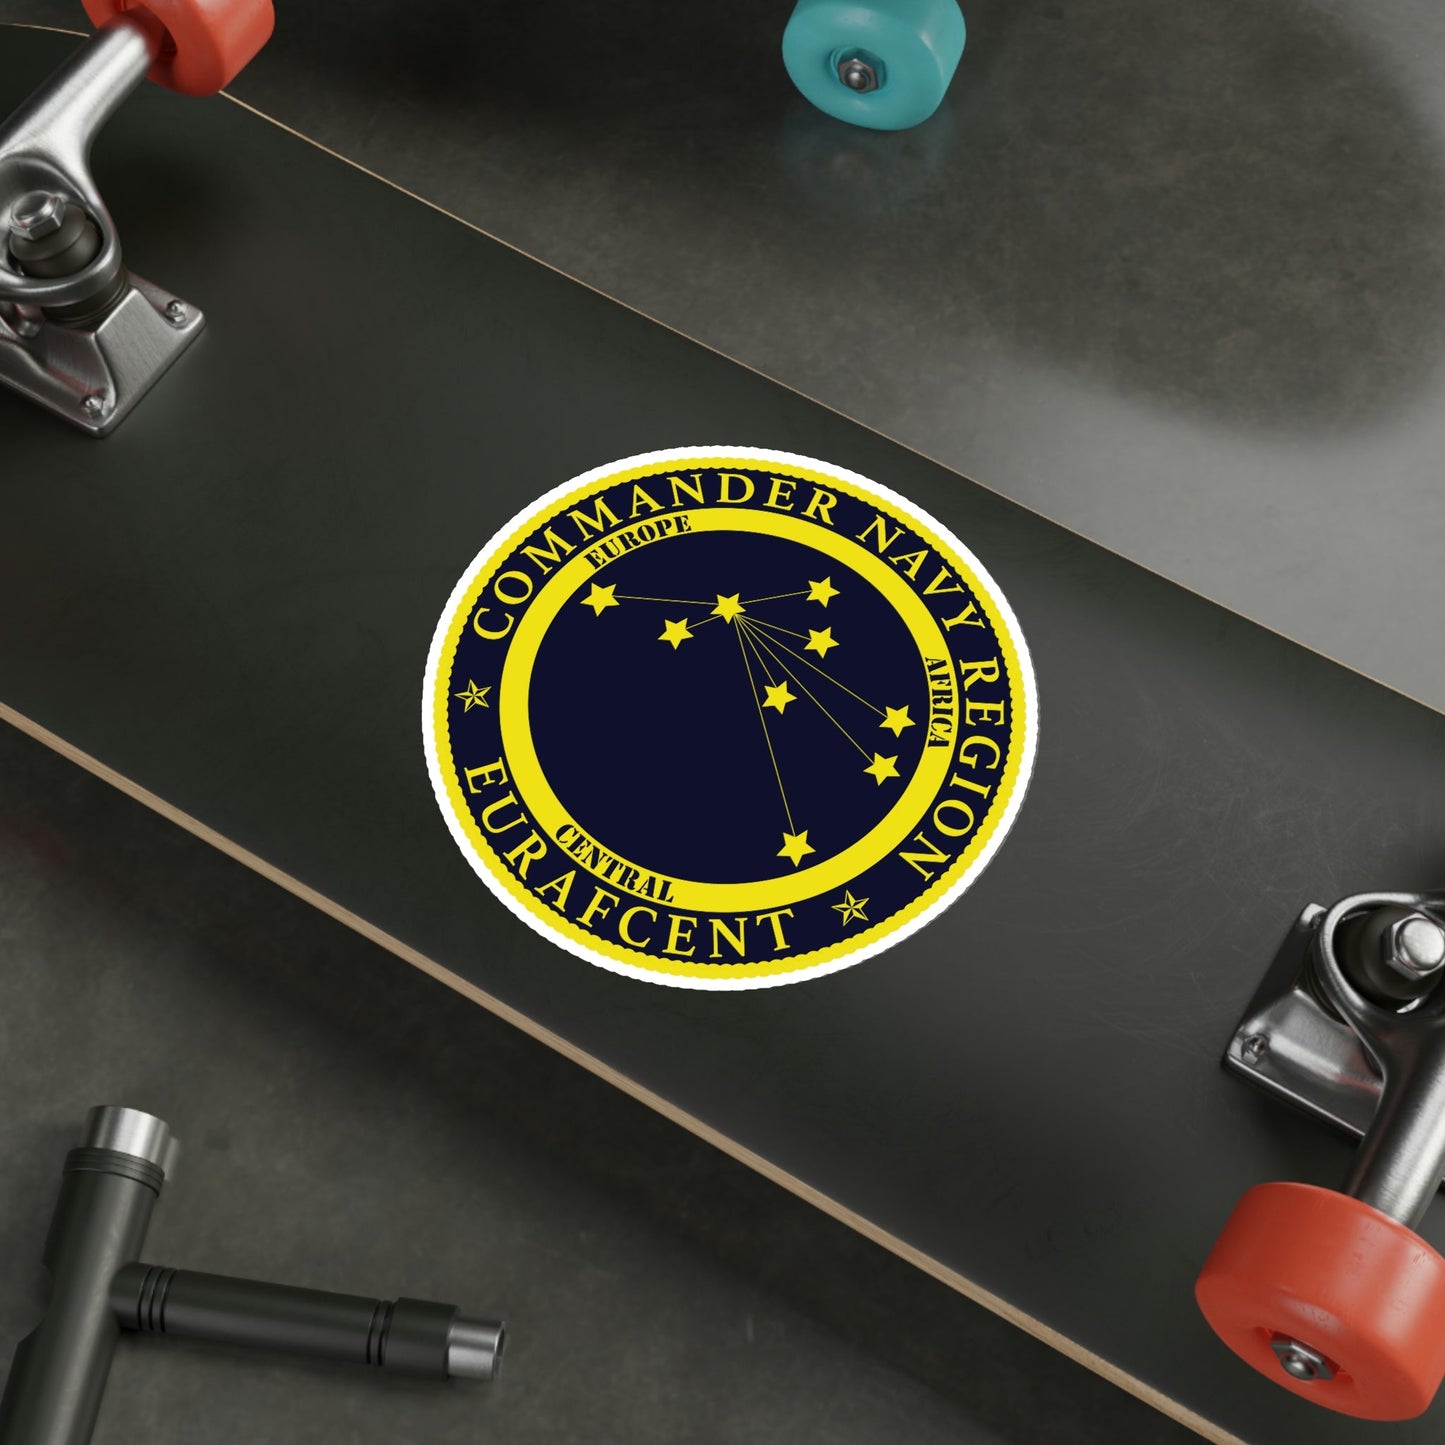 CNR EURAFCENT Commander Navy Region Europe Africa Central (U.S. Navy) STICKER Vinyl Die-Cut Decal-The Sticker Space